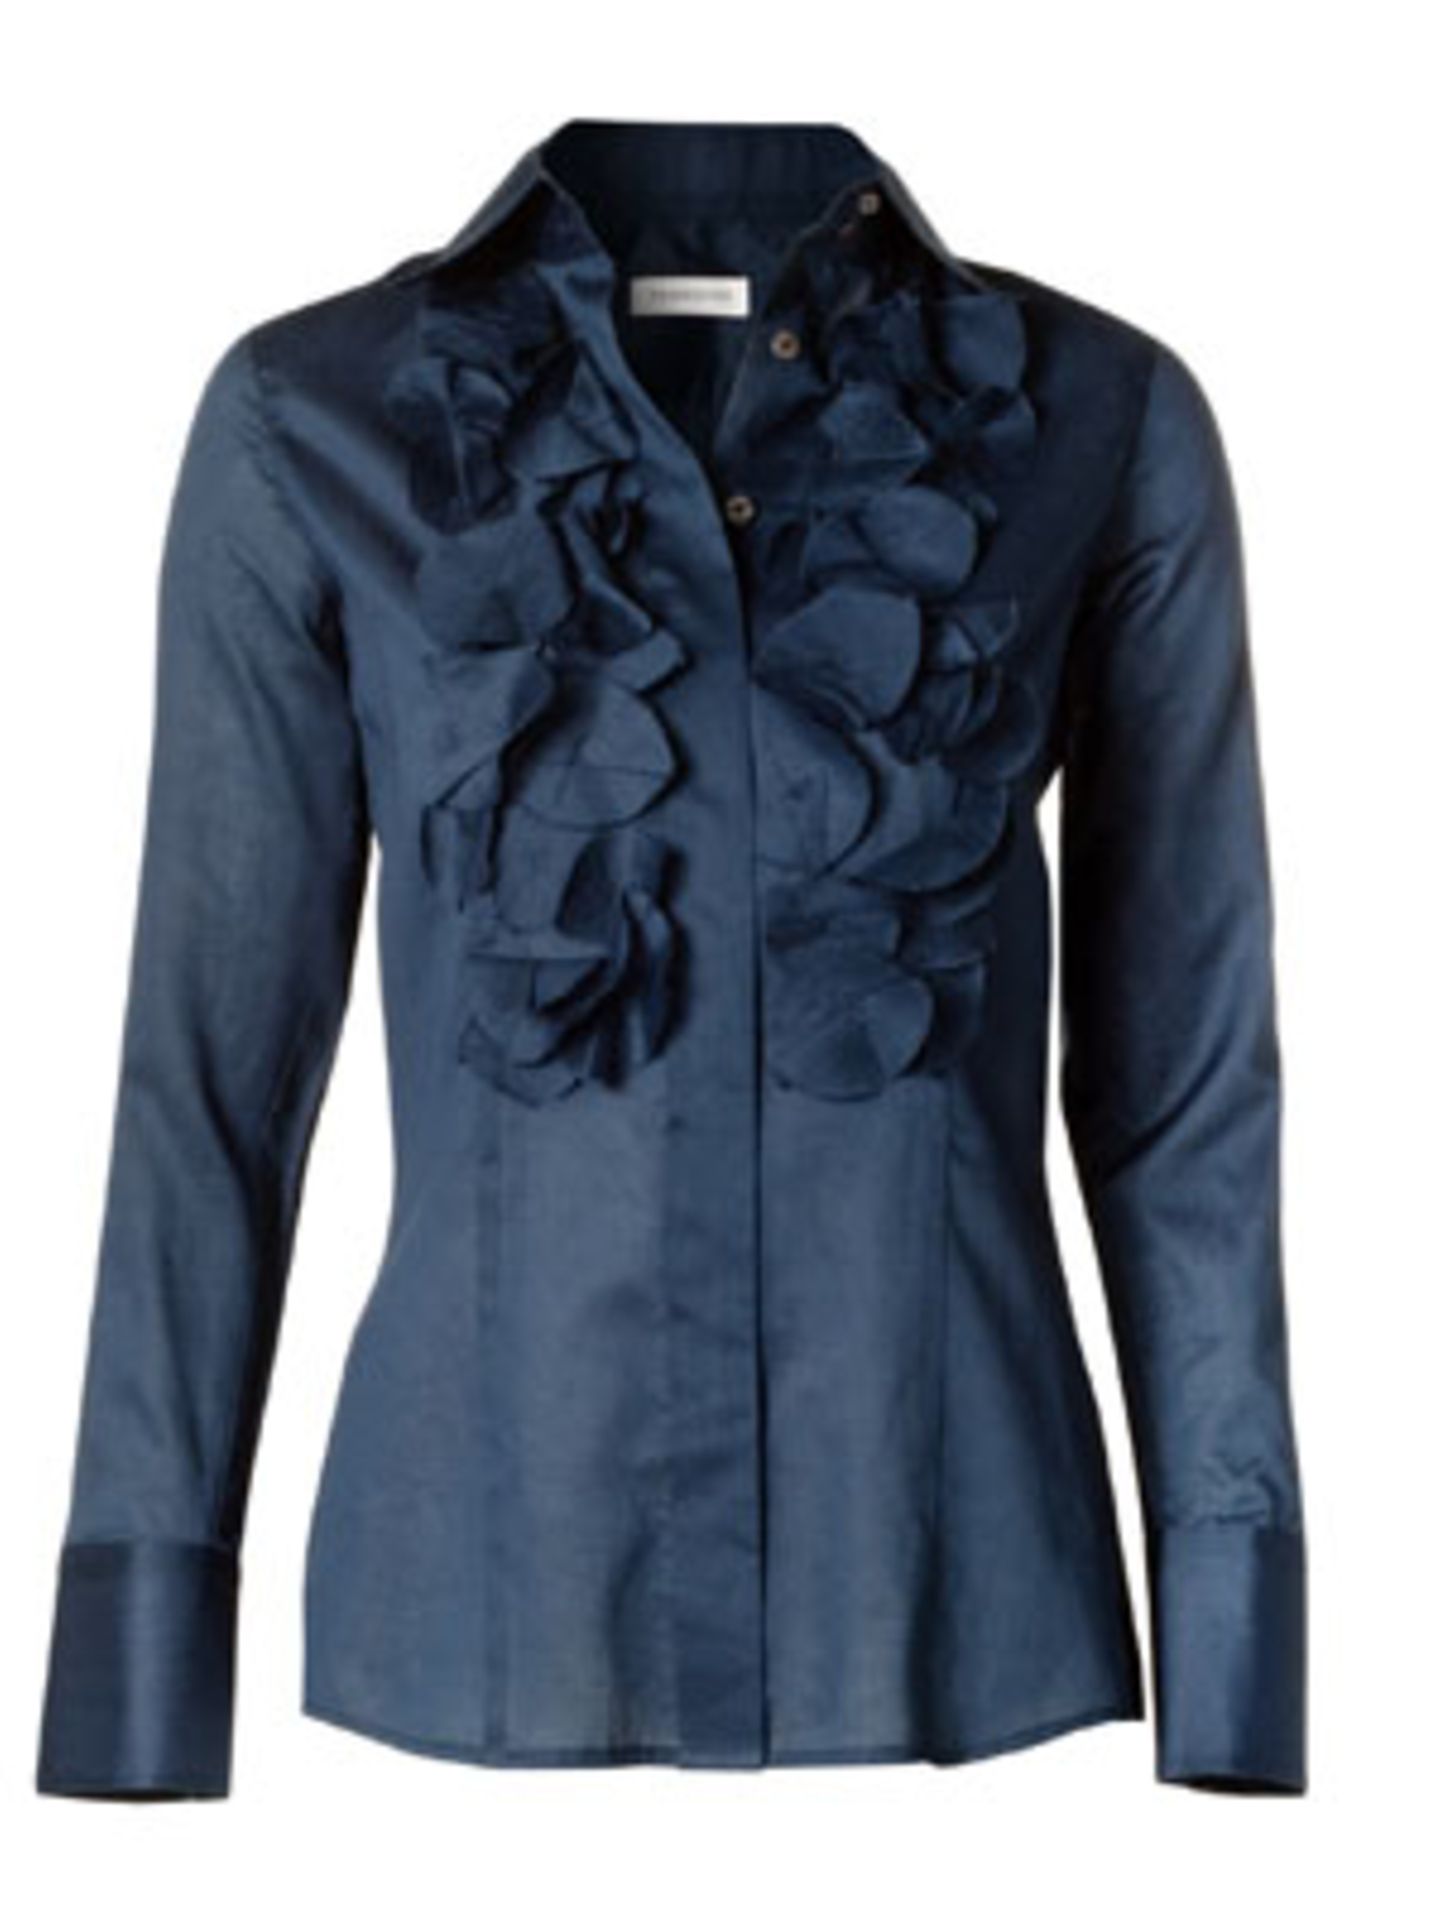 Leichte Bluse in dunklem Blauton mit Rüschen von Turnover, um 90 Euro.